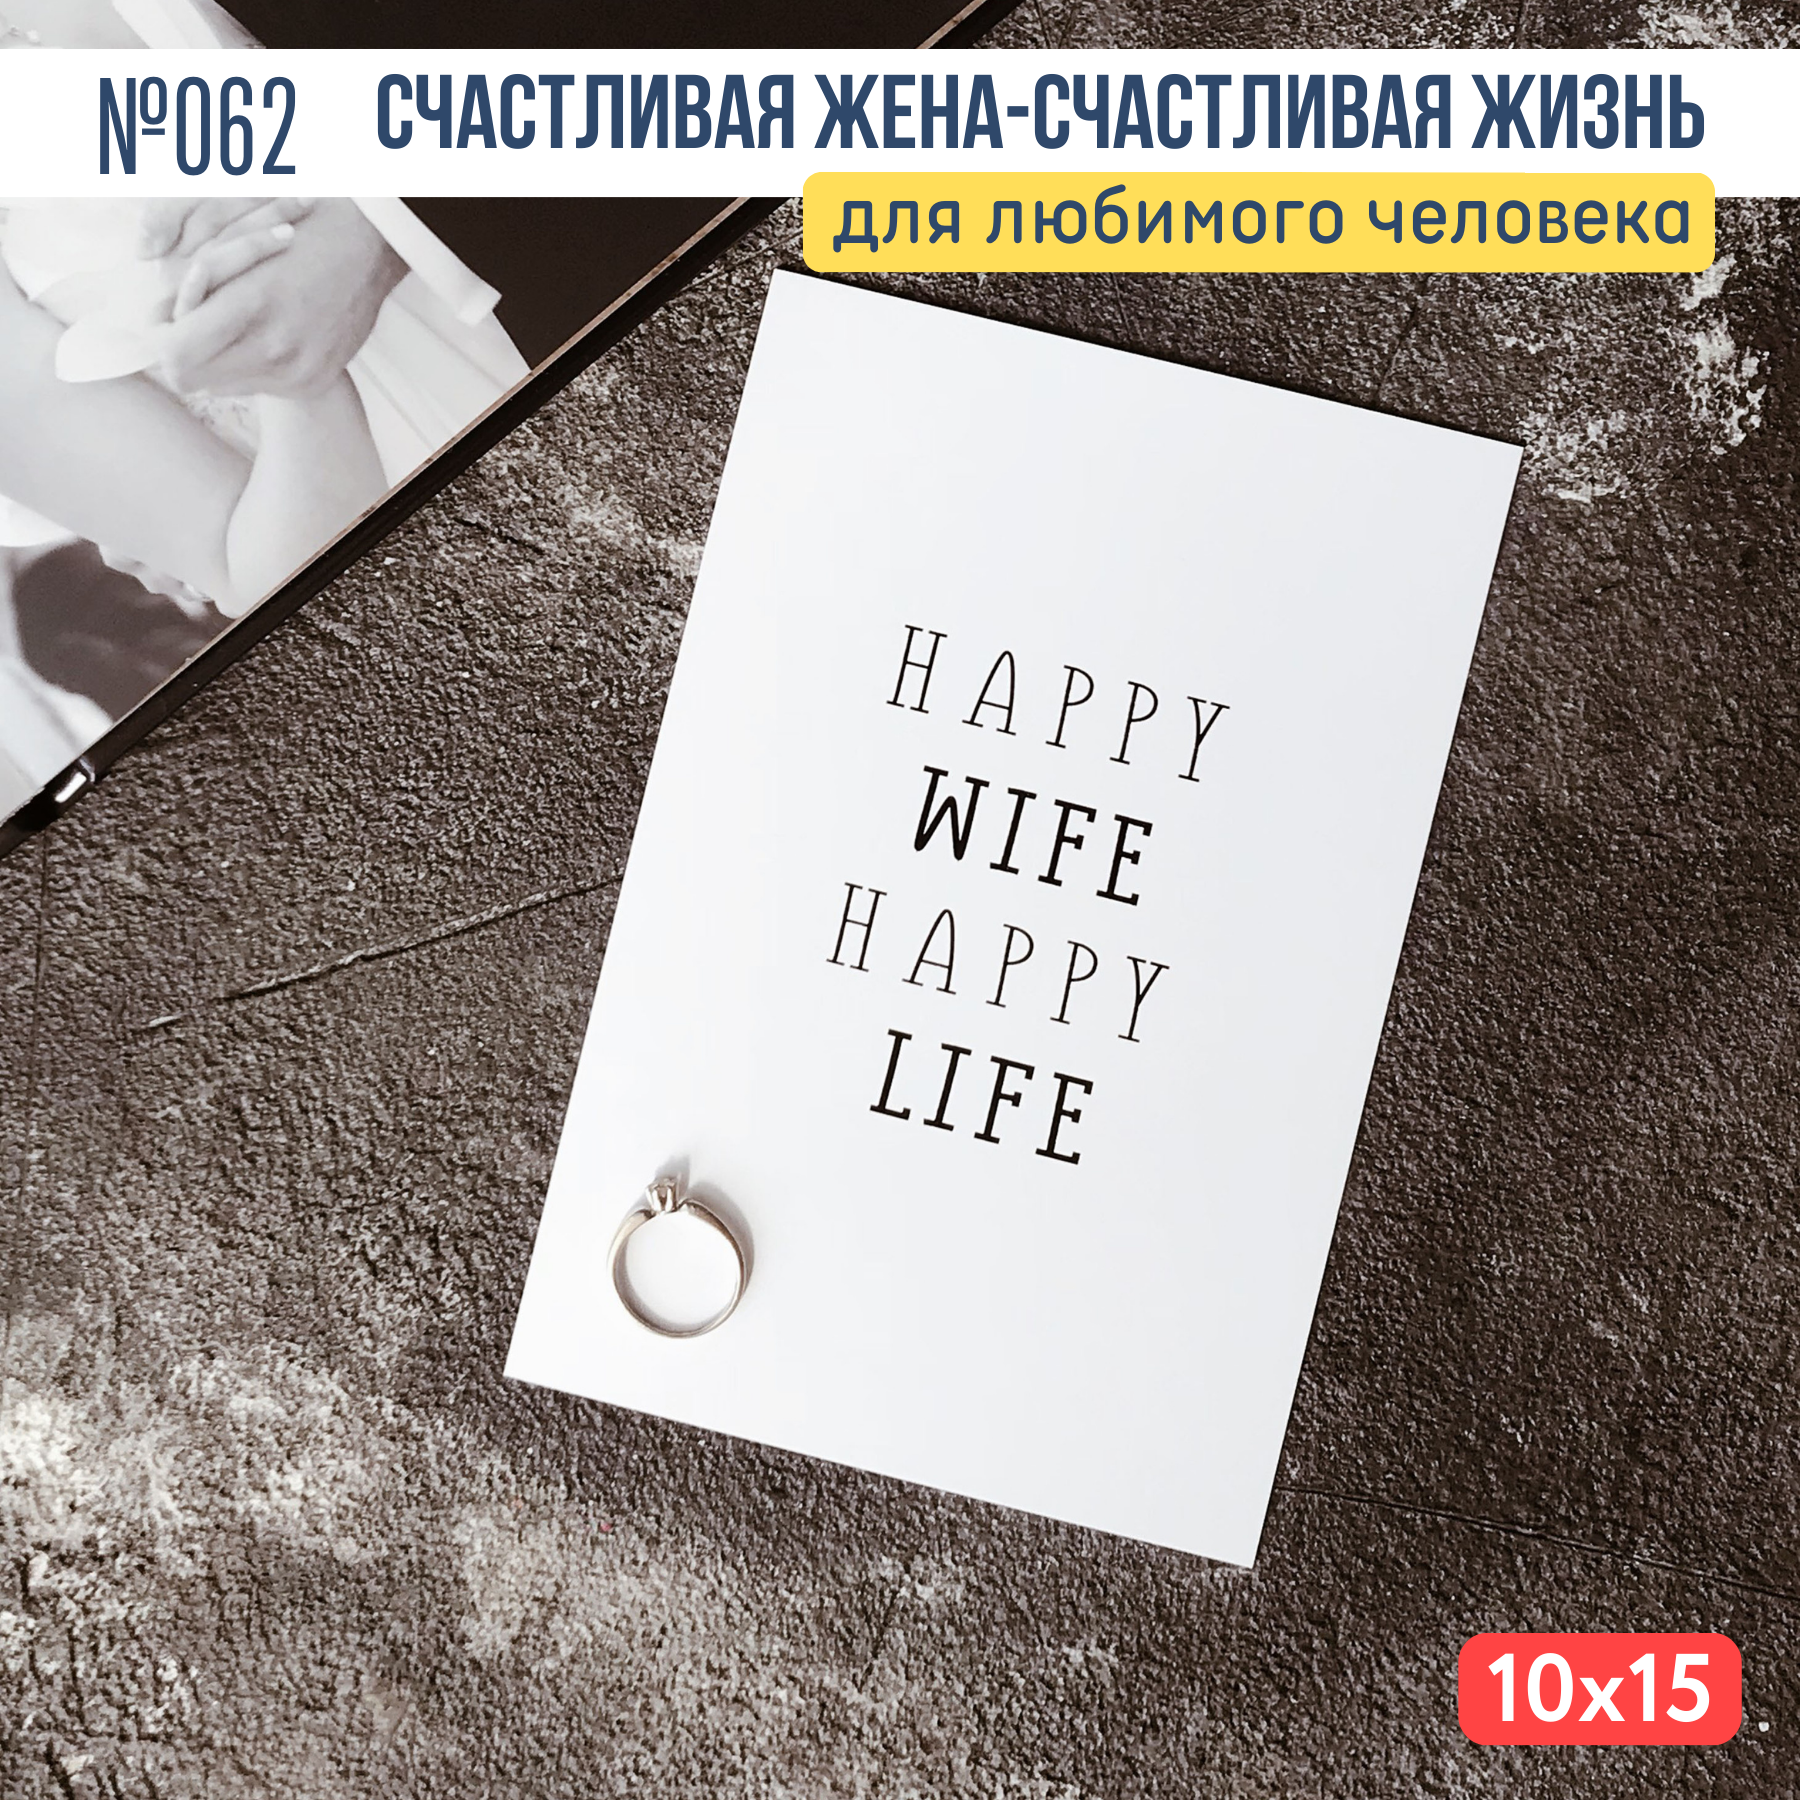 Открытка с конвертом "Счастливая жена - счастливая жизнь"